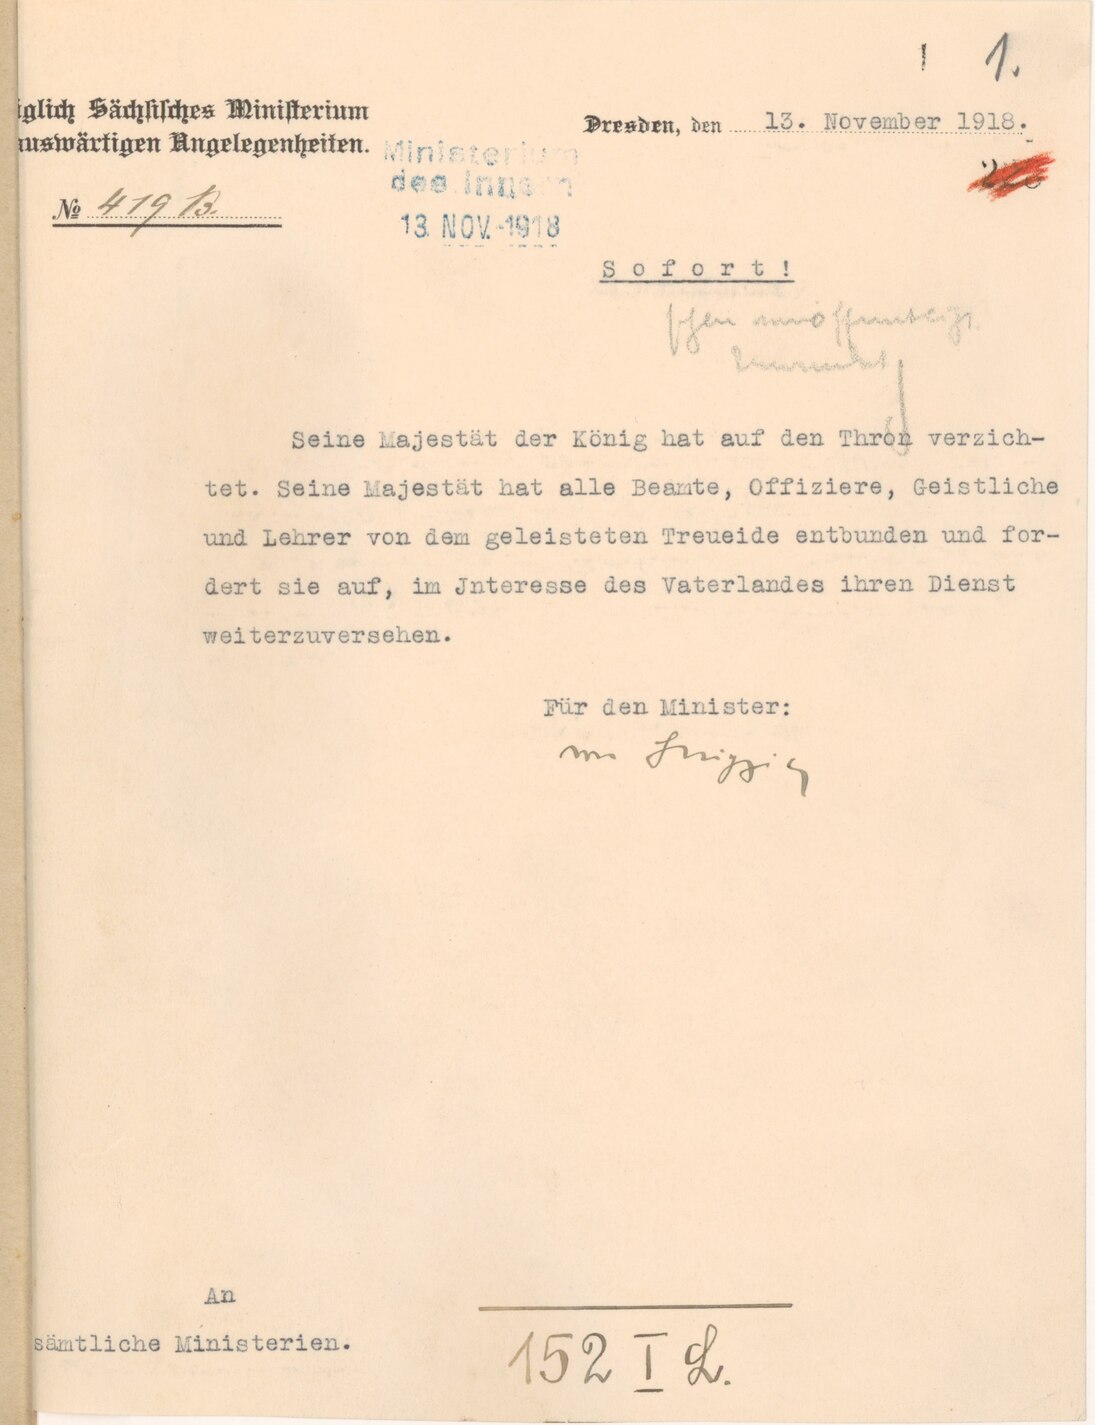 Maschinenschriftliches Schreiben des Königlich Sächsischen Ministeriums für Auswärtige Angelegenheiten vom 13. November 1918